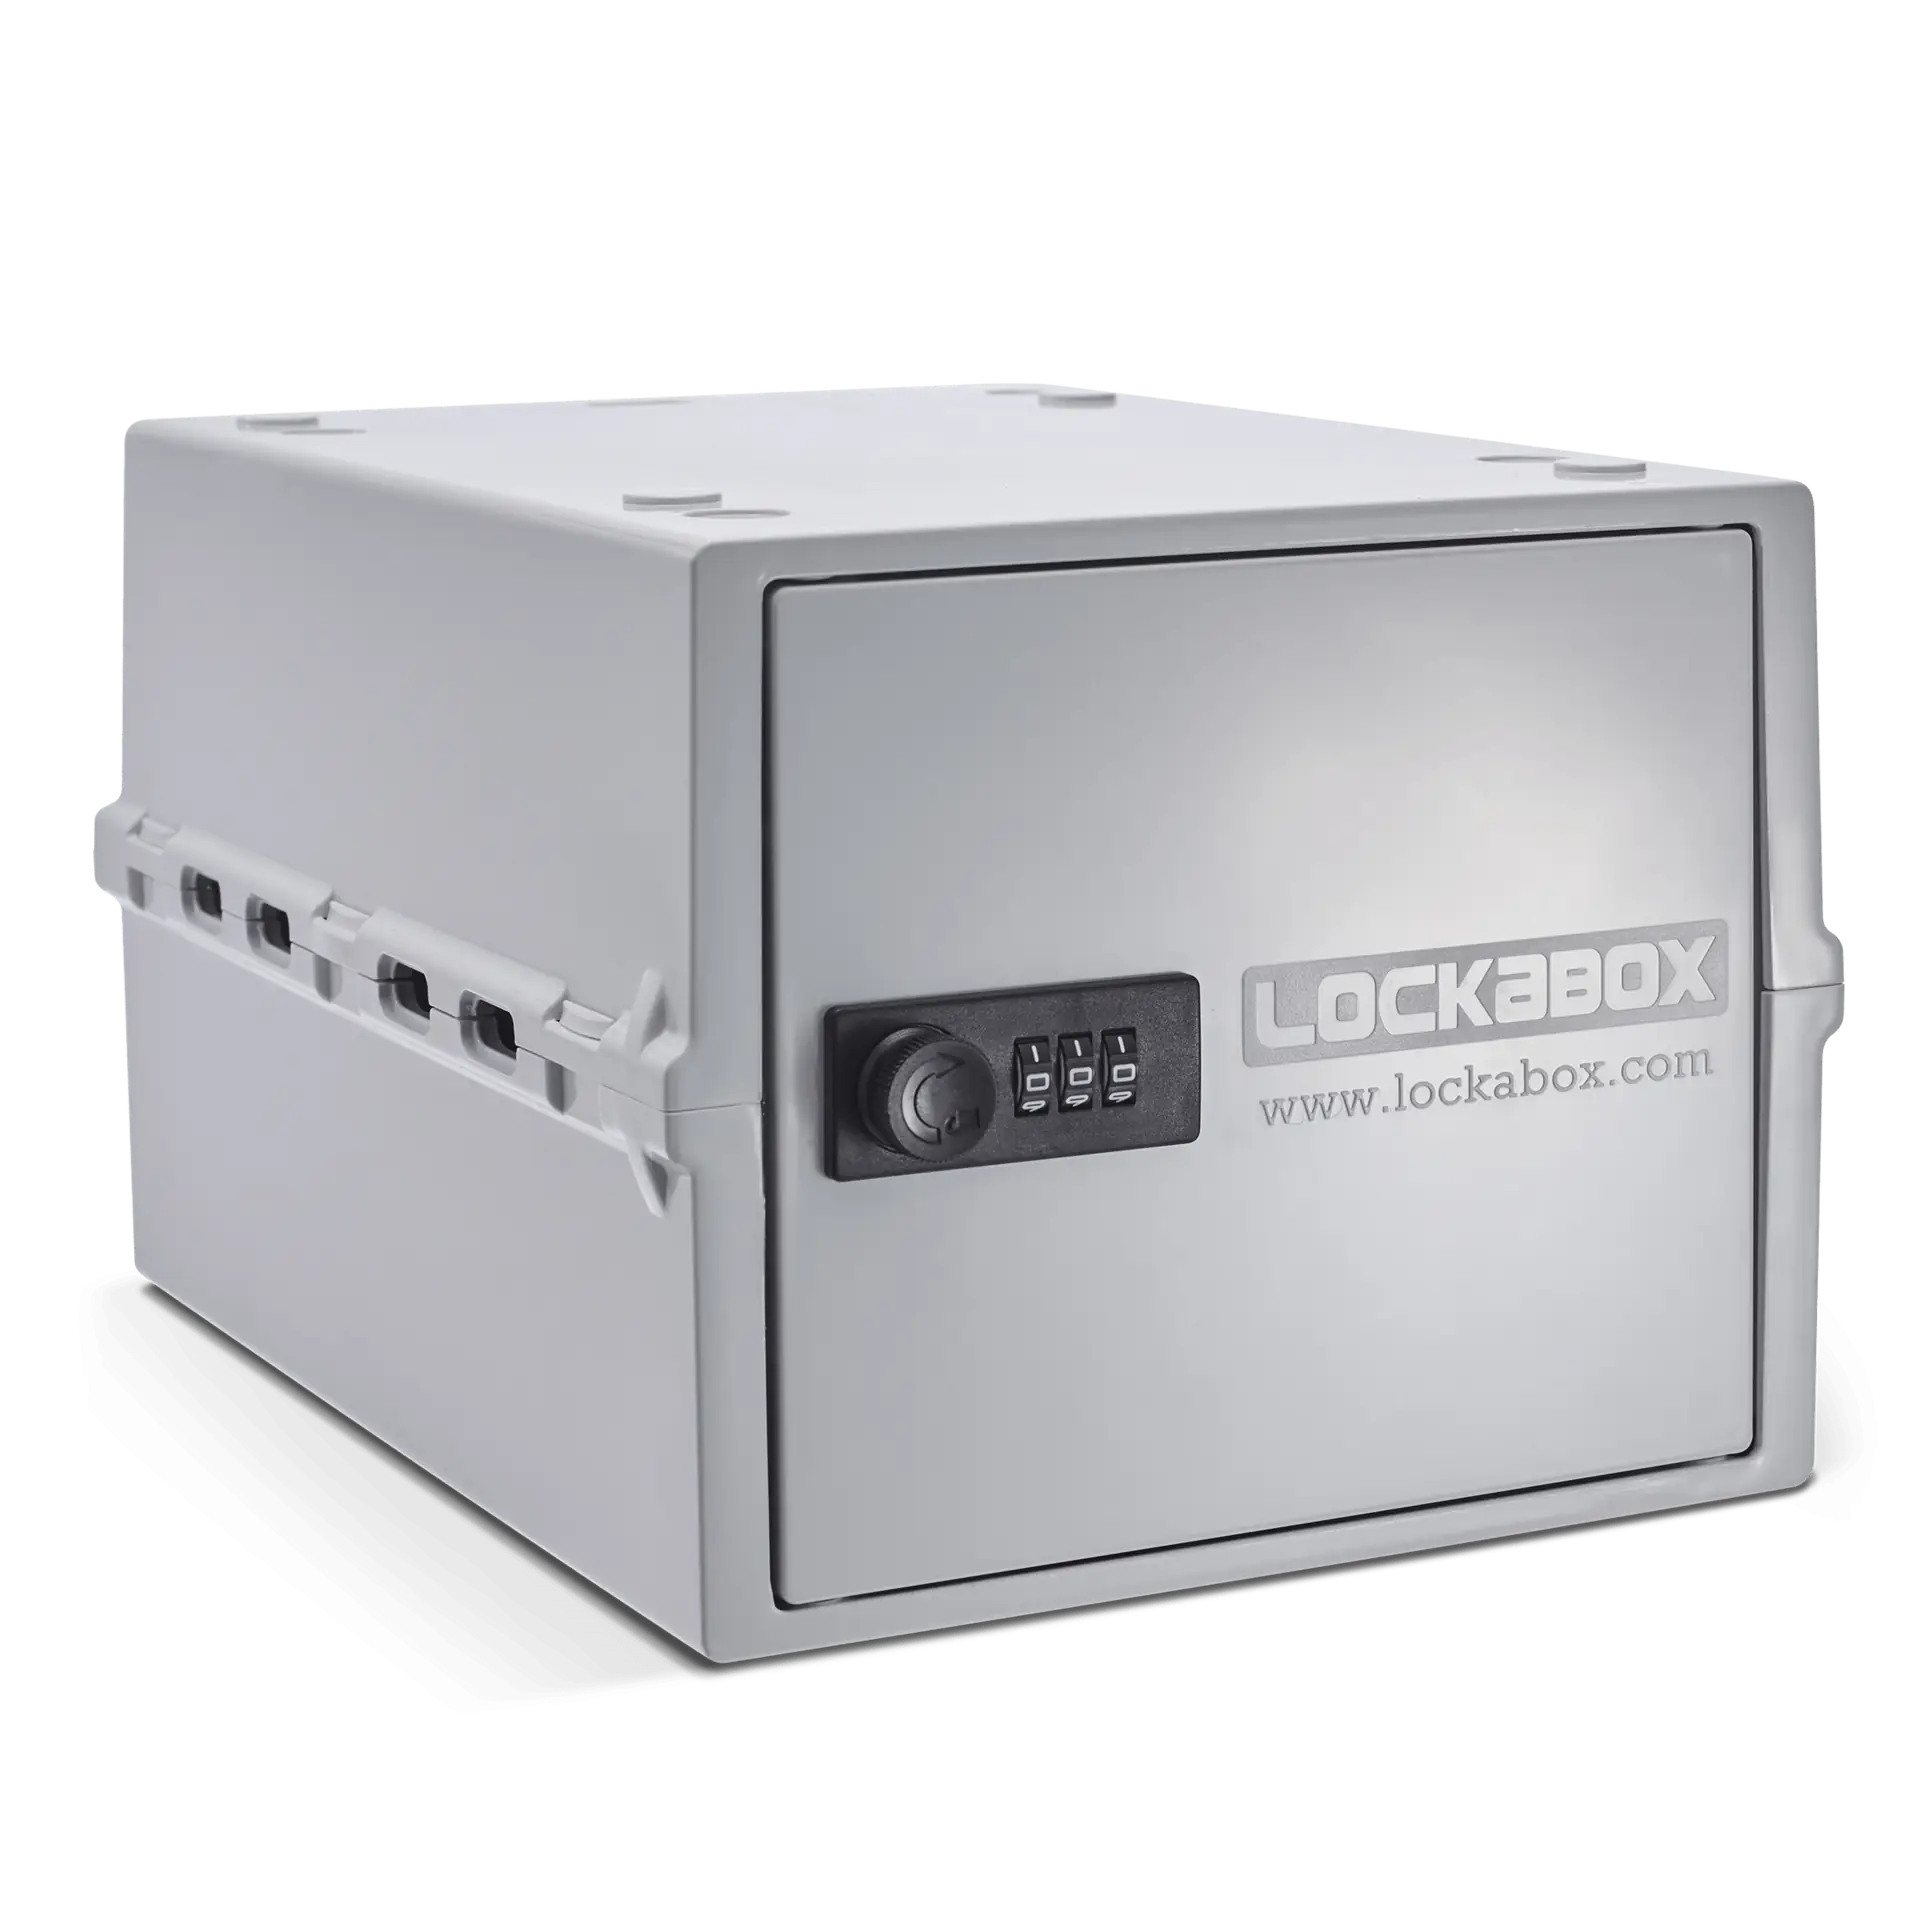 Lockabox One Opal 2160x2160 300dpi